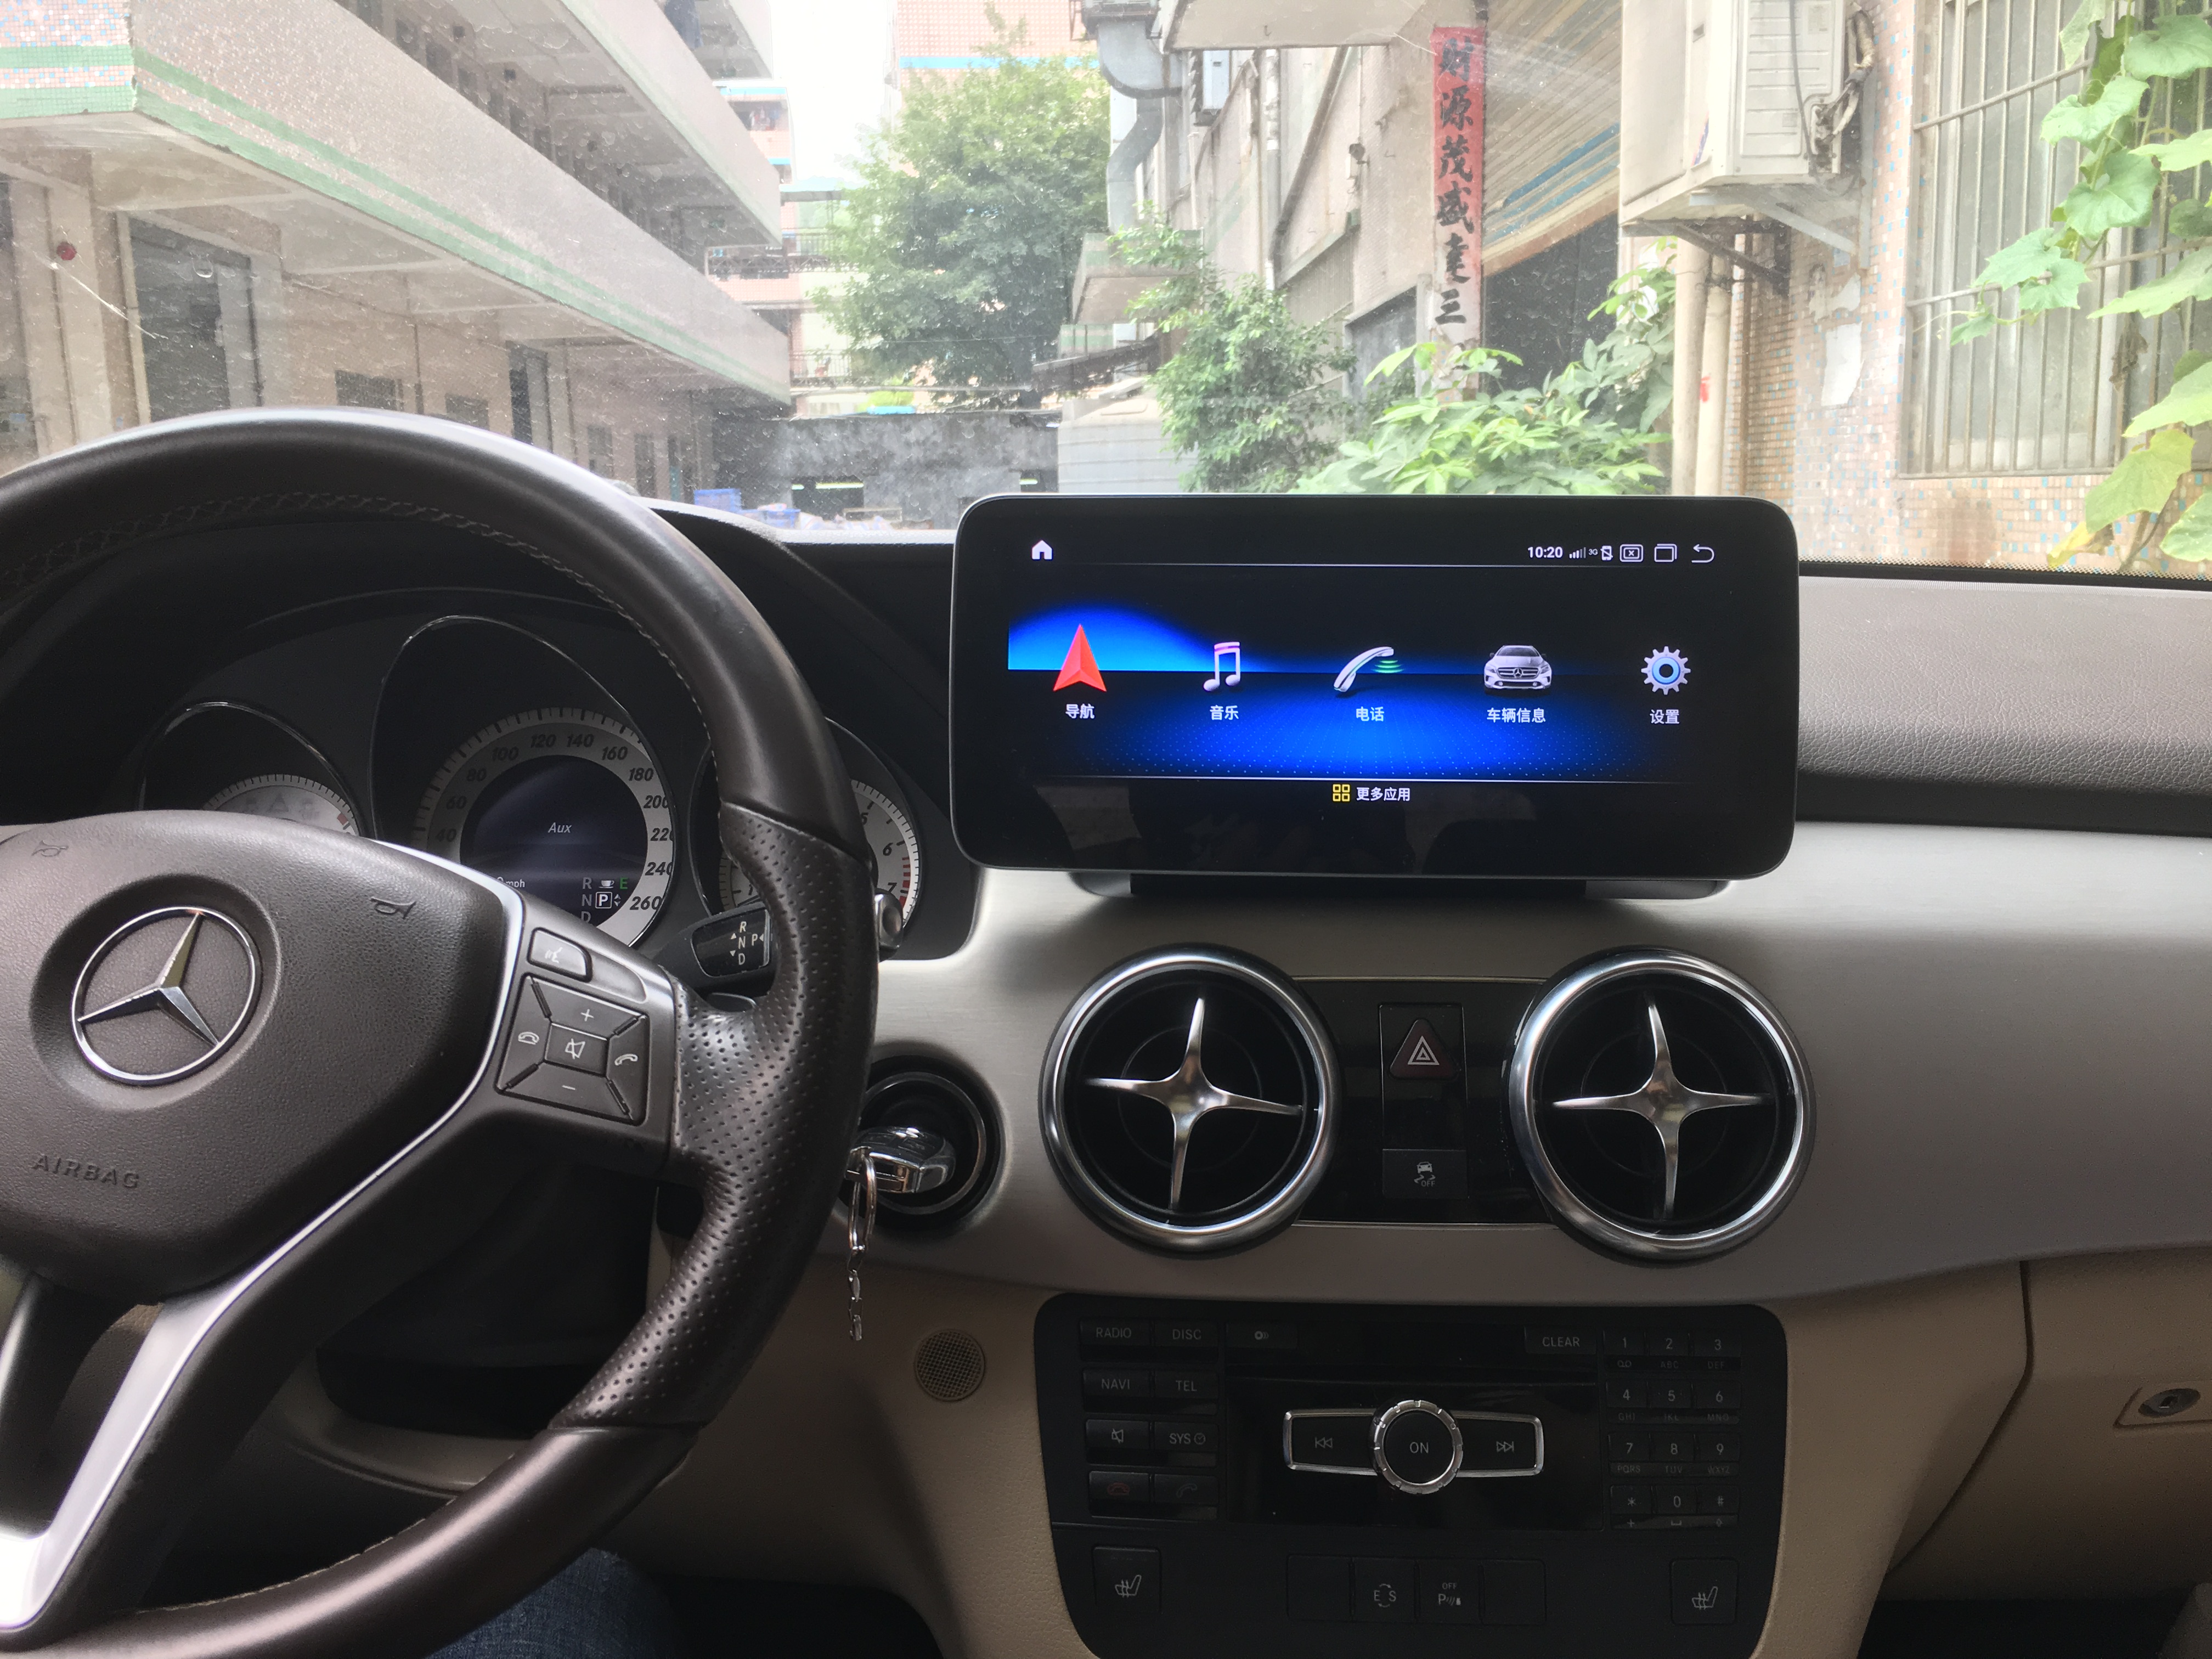 Mercedes Benz GLK 2013 - 2015 Car Navigation DVD Player BT 4G WIFI